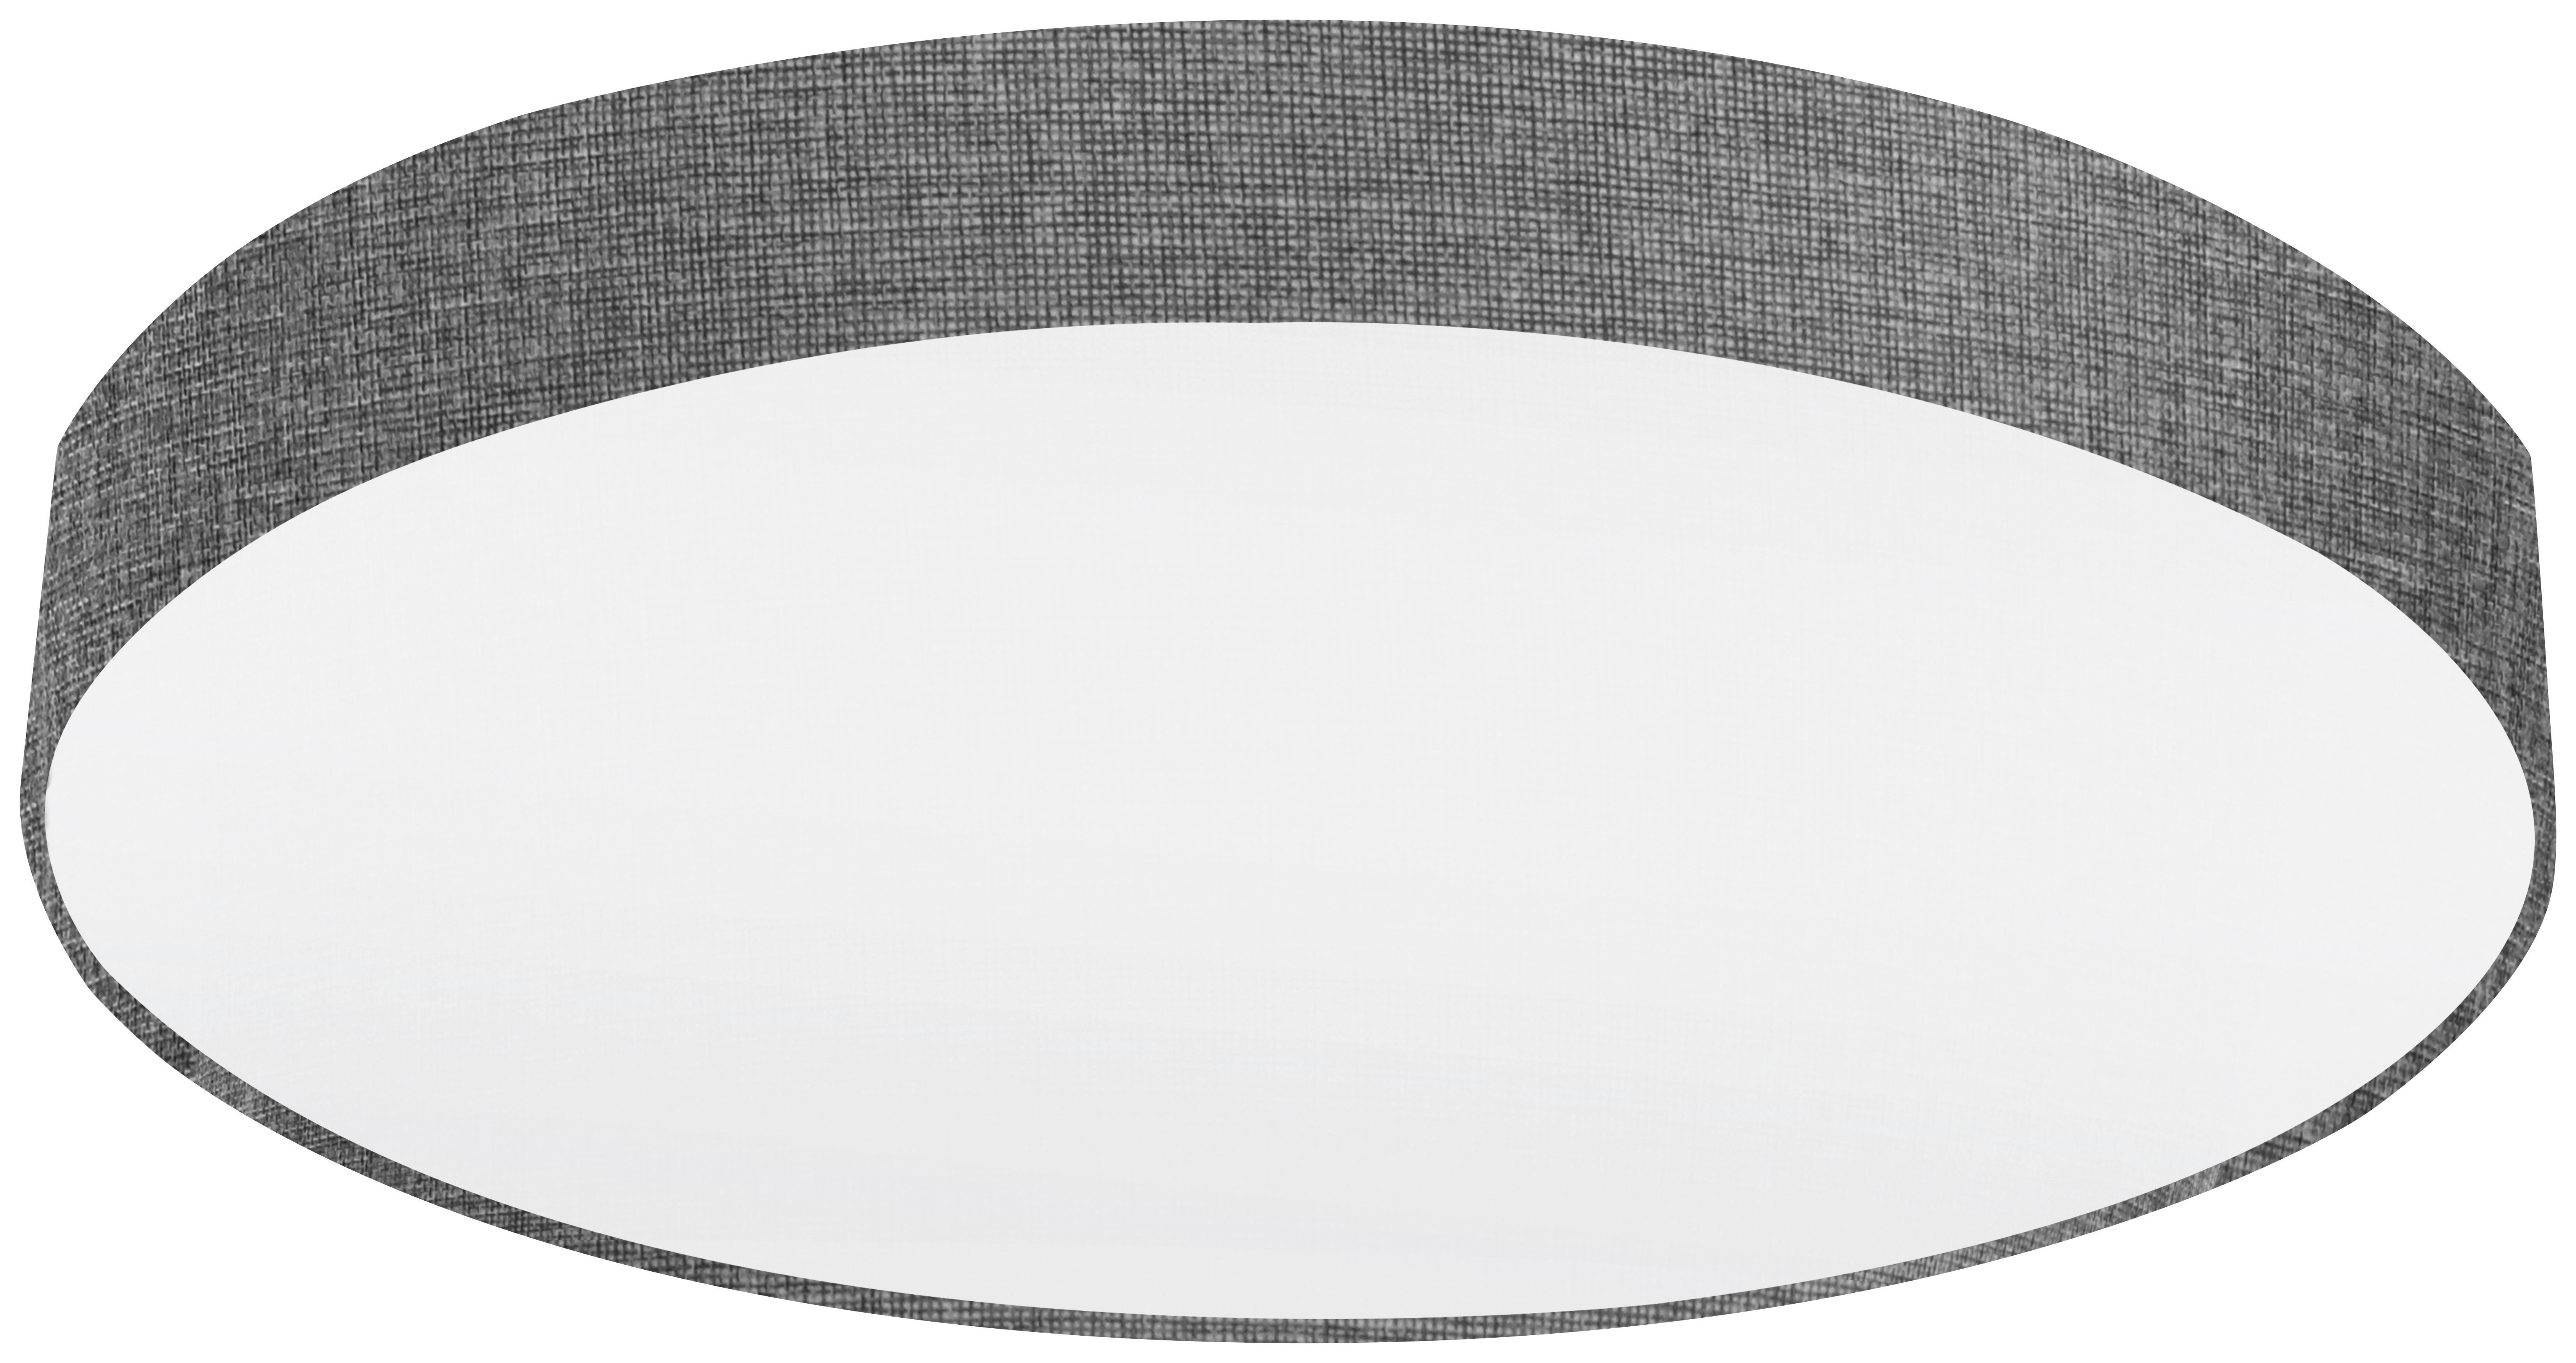 DECKENLEUCHTE  76/15 cm    - Weiß/Grau, Design, Textil/Metall (76/15cm)